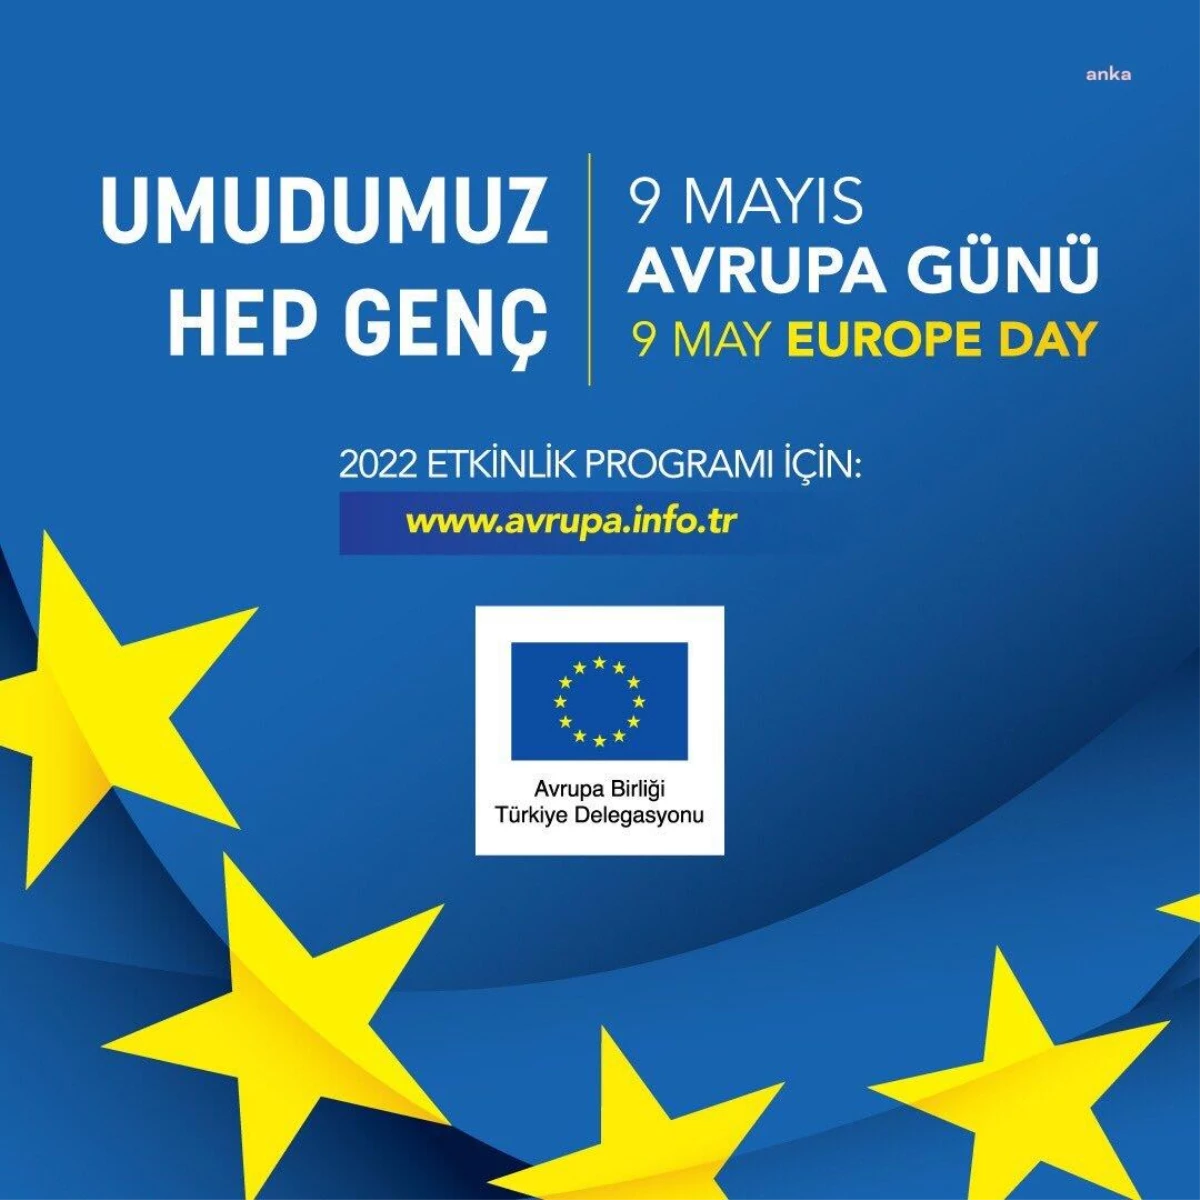 9 Mayıs Avrupa Günü, "Umudumuz Hep Genç" Sloganıyla Kutlanacak